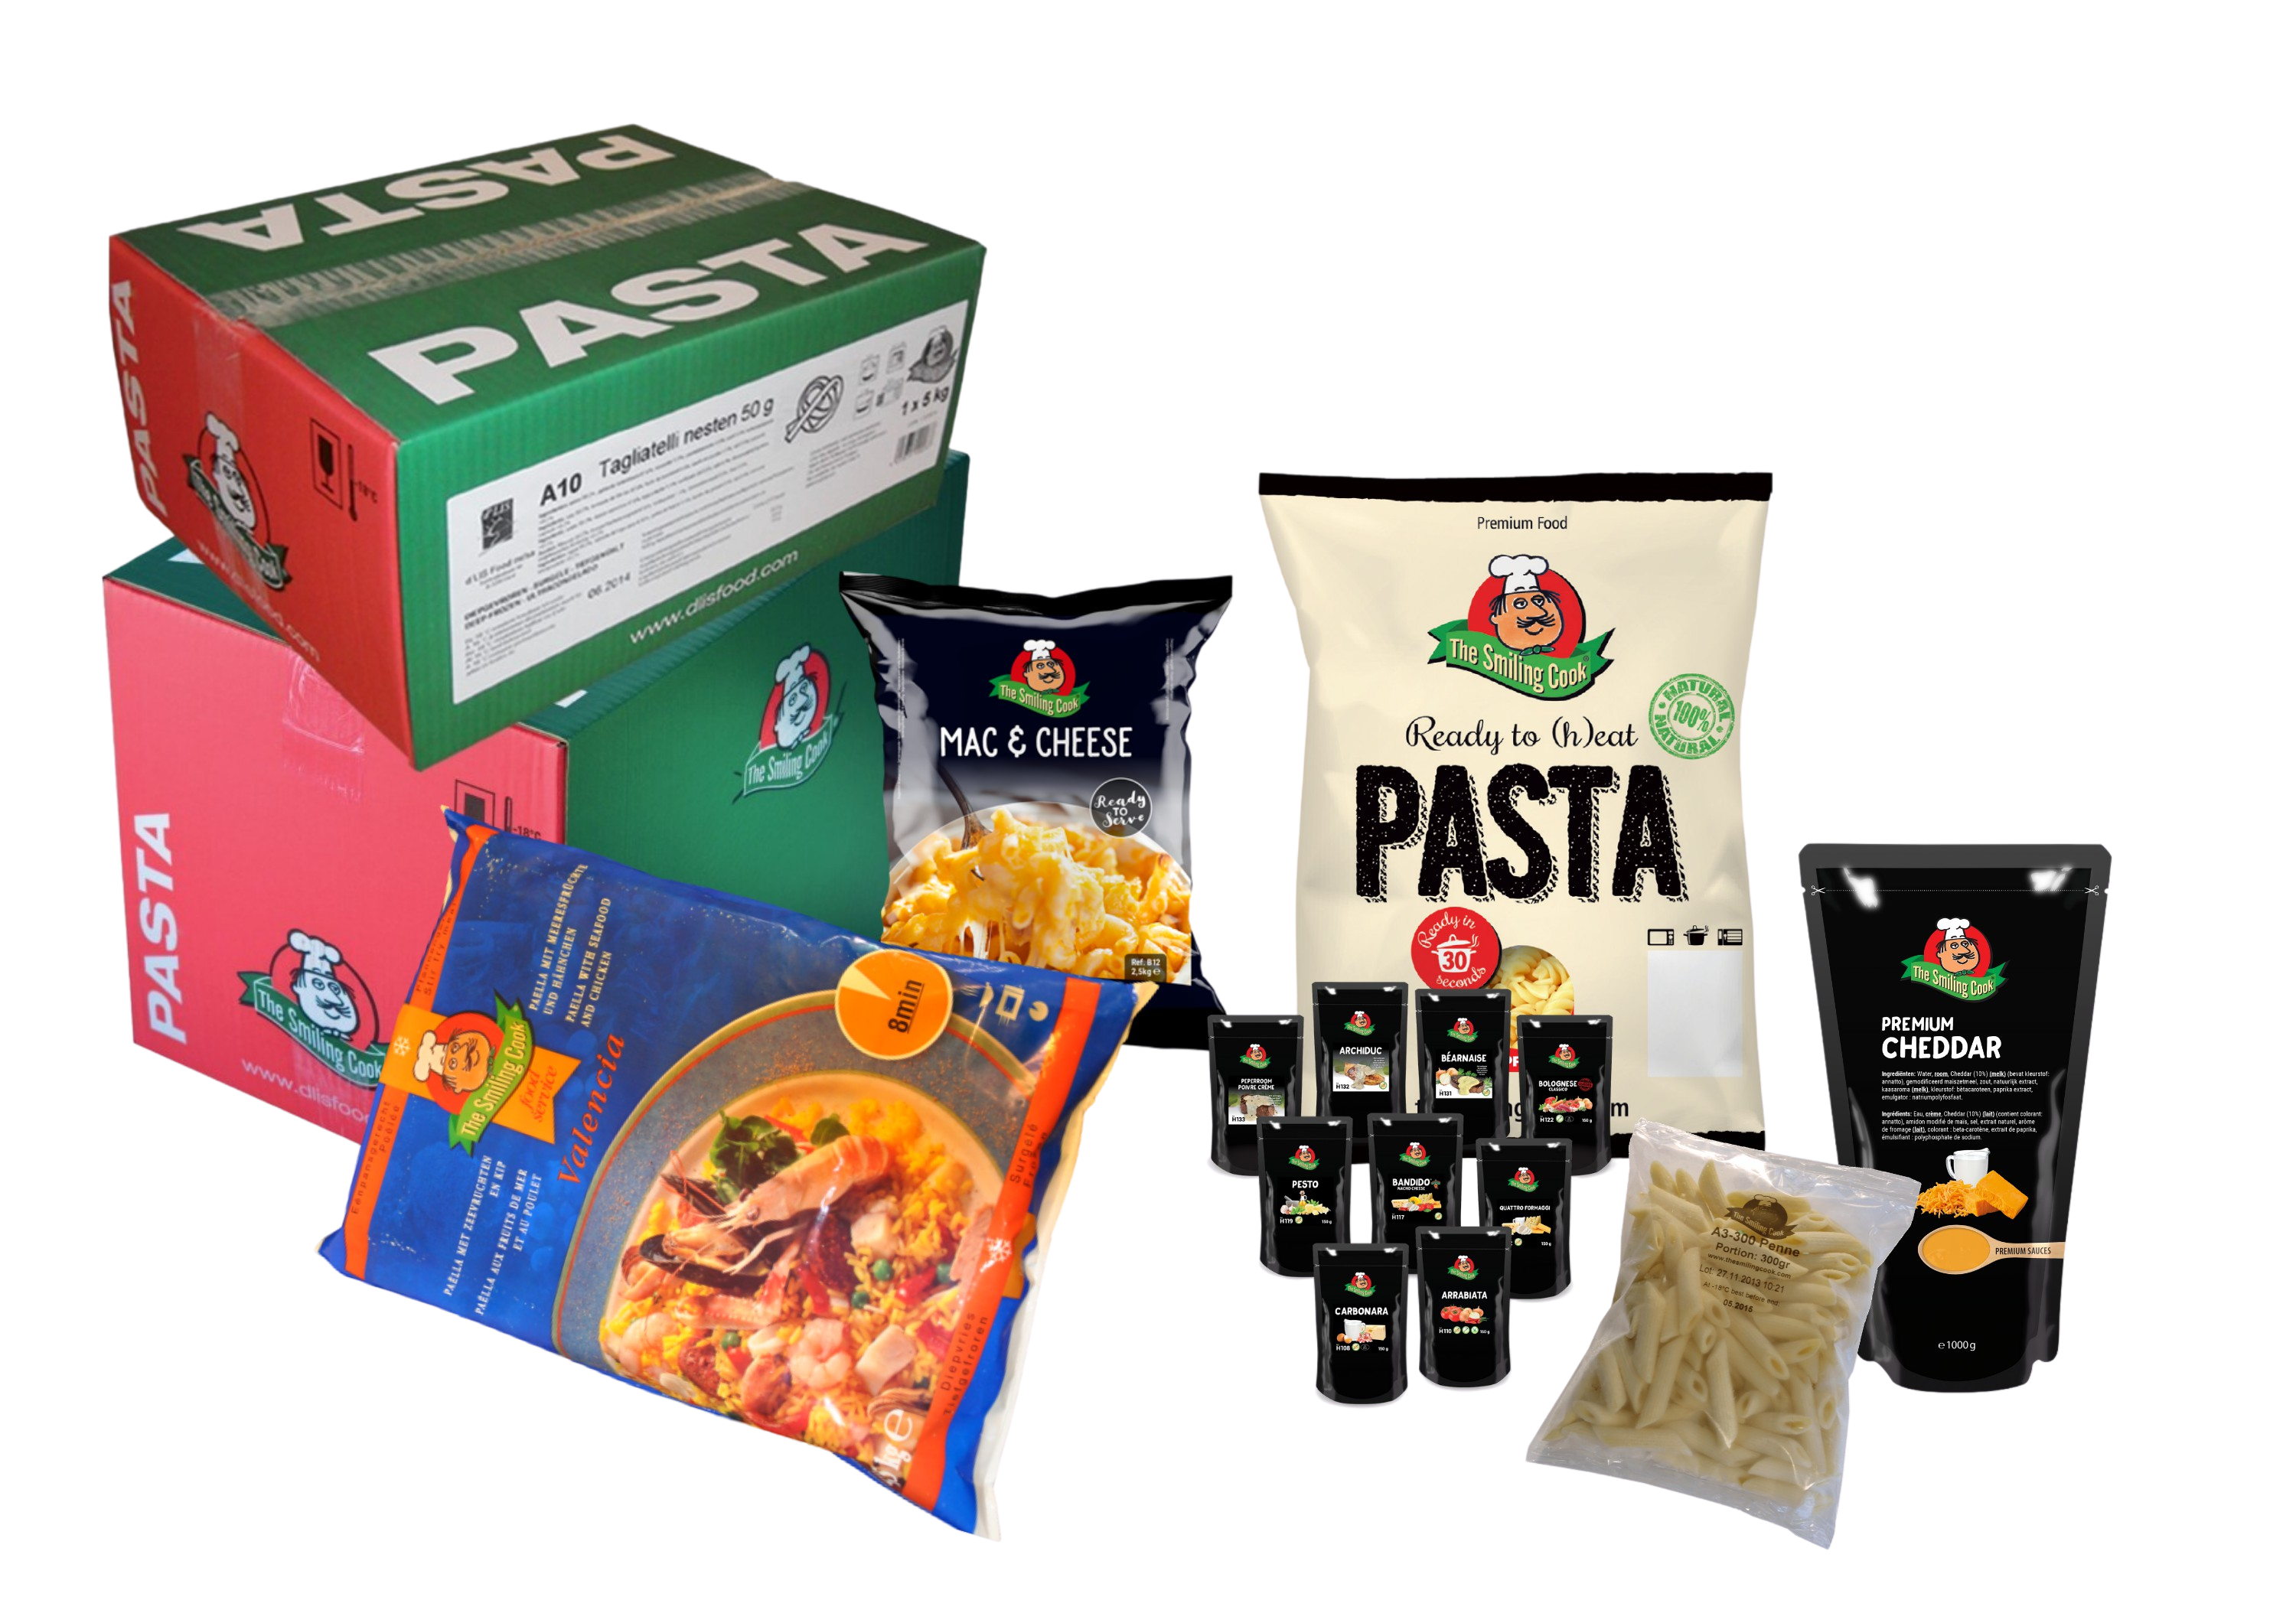 Ellende palm Dakraam Pasta van The Smiling Cook is beschikbaar in verschillende handige  verpakkingen.